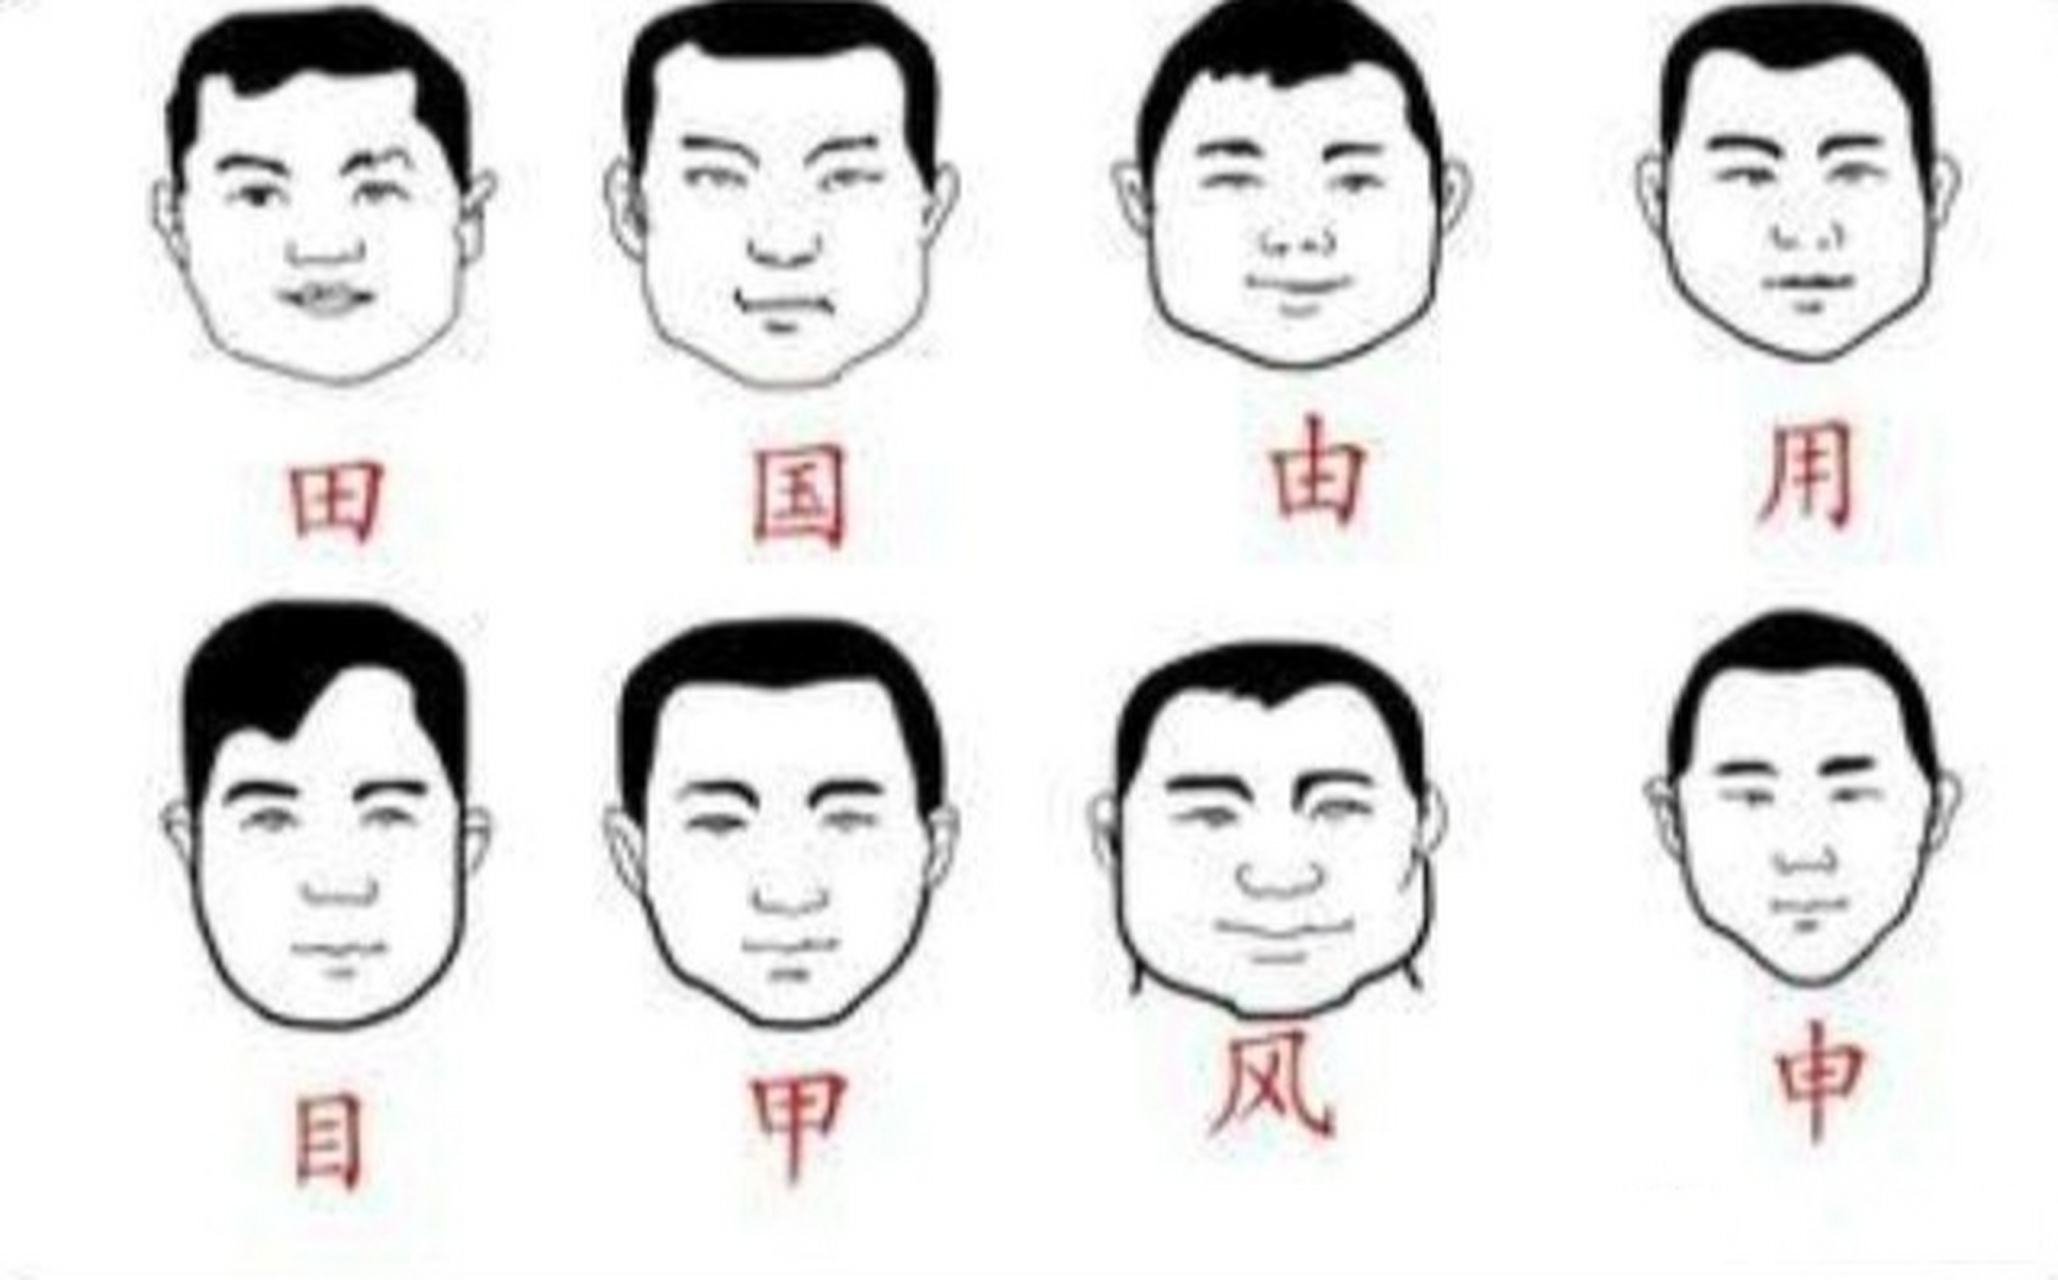 如果用汉字表示脸型,你是哪个字?